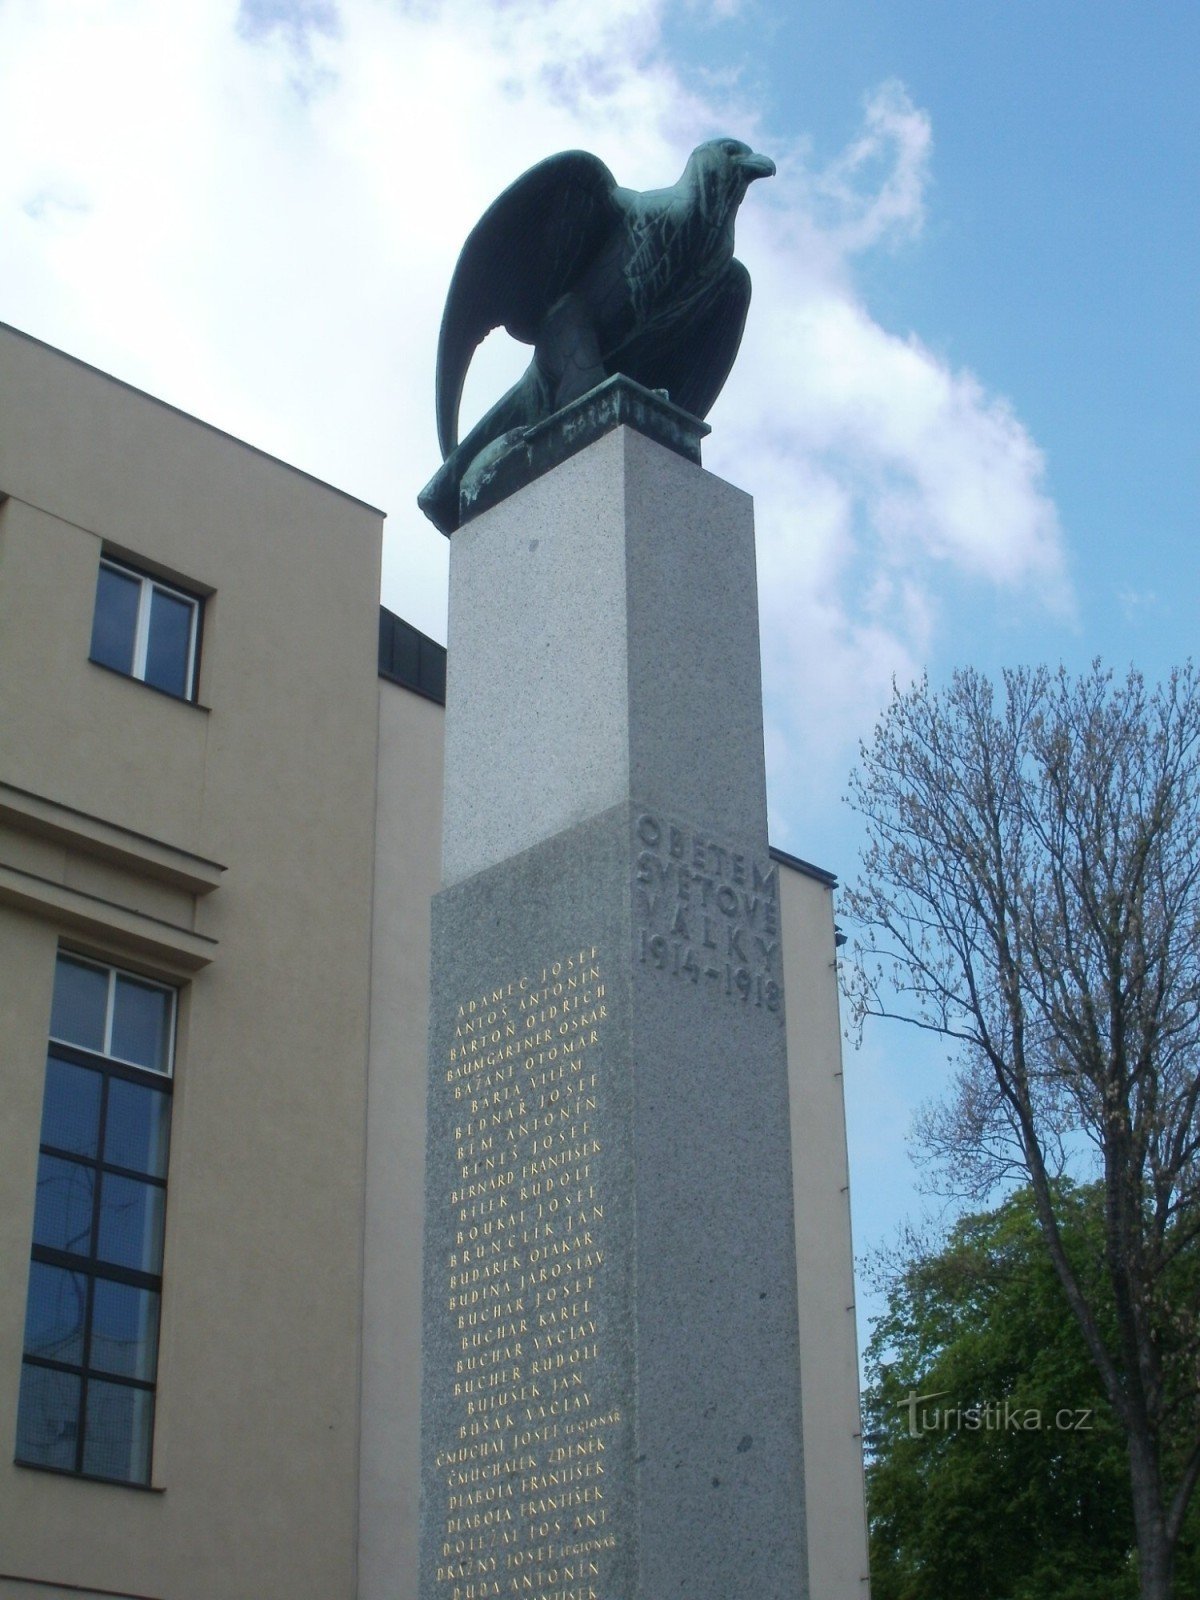 ジレムニケ - 戦争犠牲者の記念碑